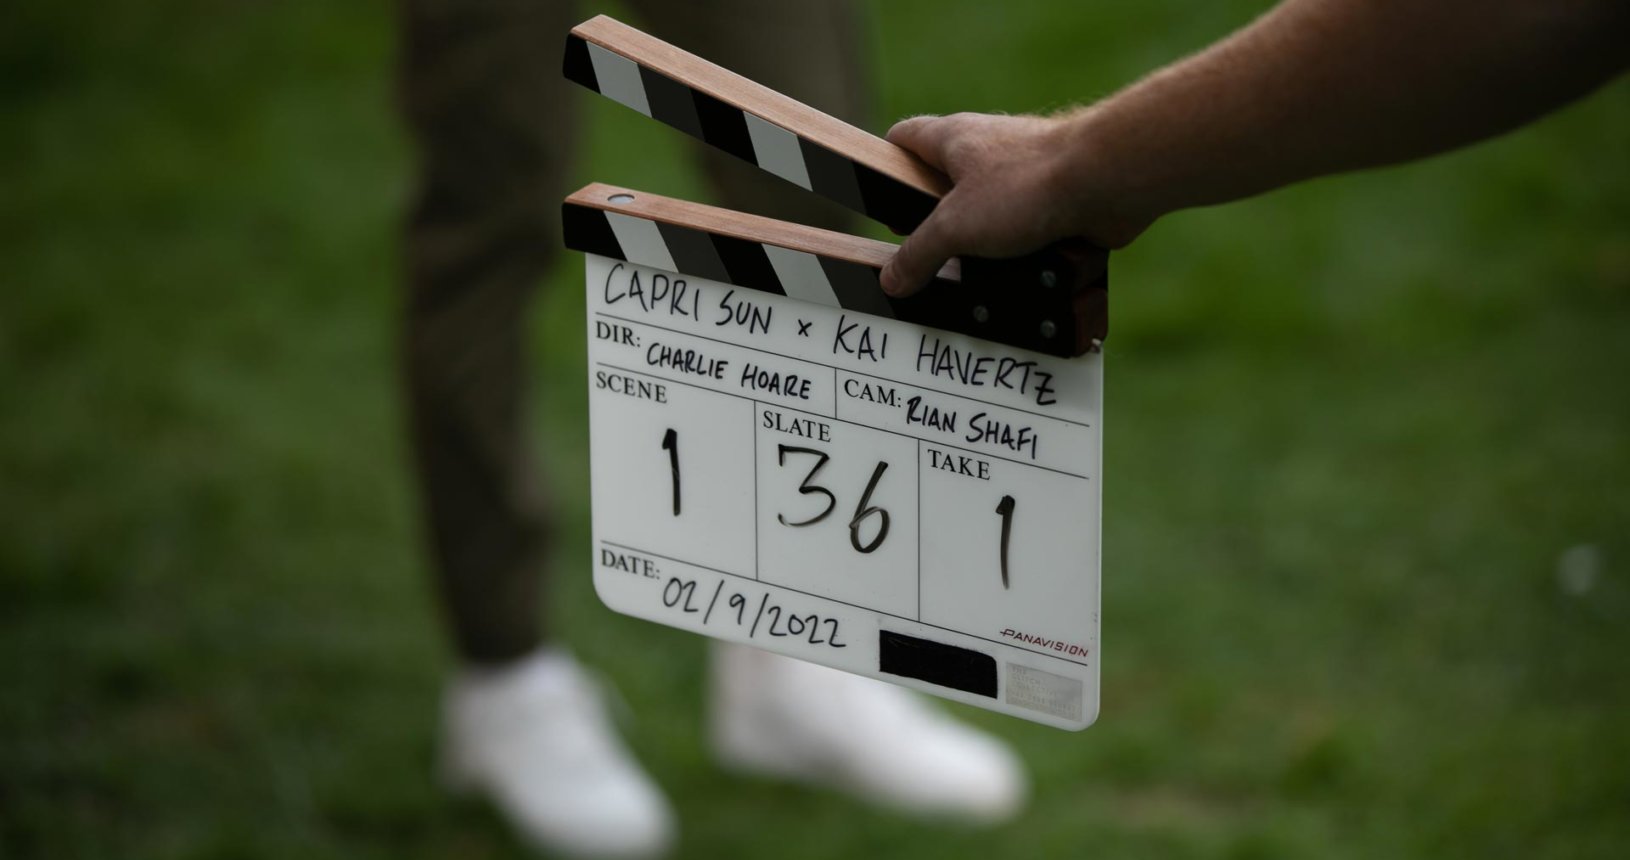 Capri Sun x Kai Havertz - Behind the Scenes 01